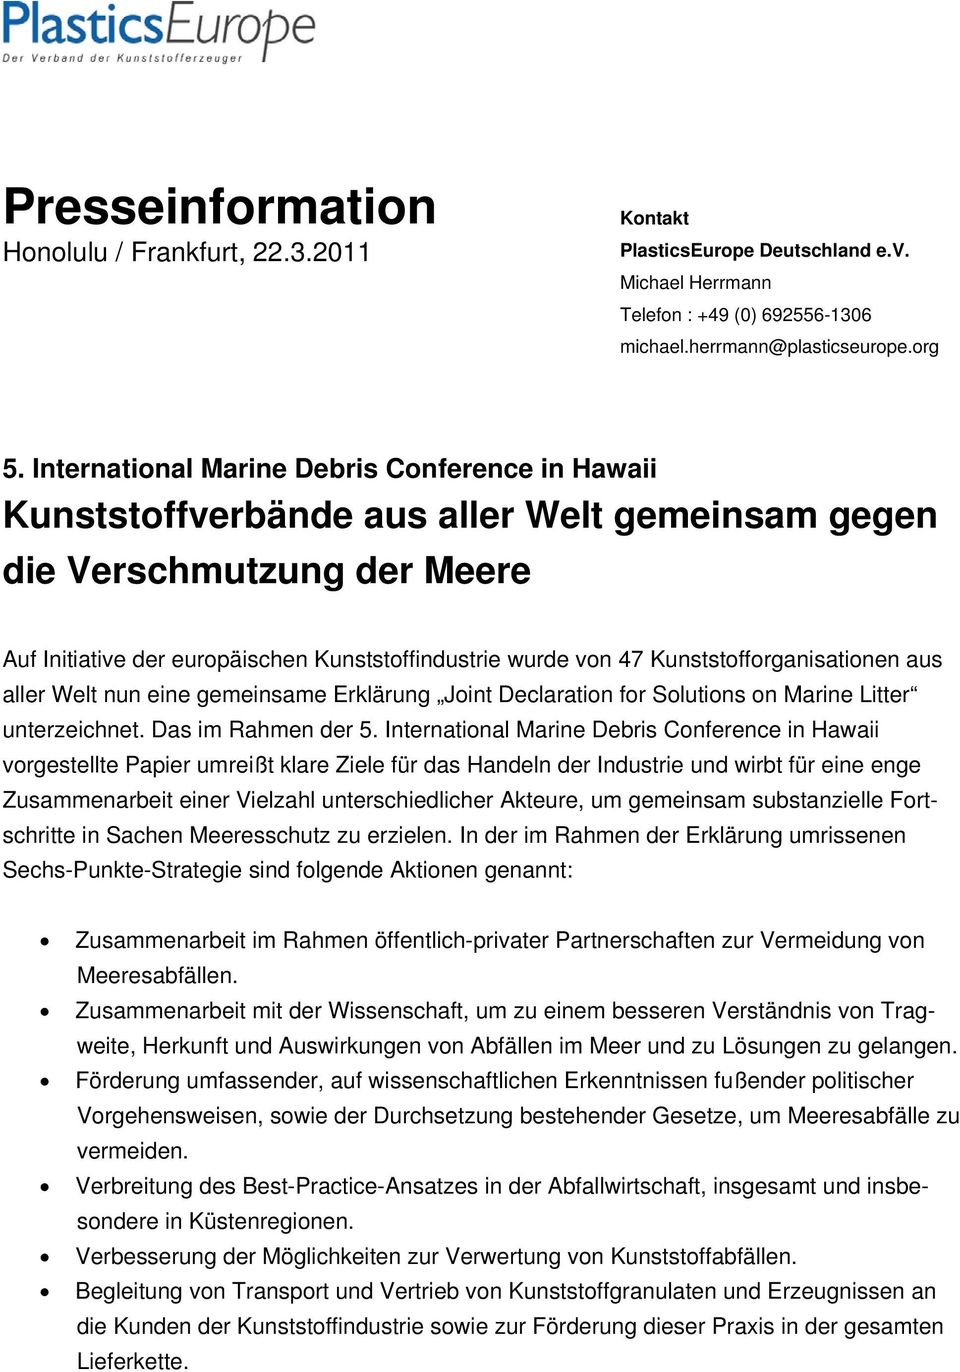 Kunststofforganisationen aus aller Welt nun eine gemeinsame Erklärung Joint Declaration for Solutions on Marine Litter unterzeichnet. Das im Rahmen der 5.